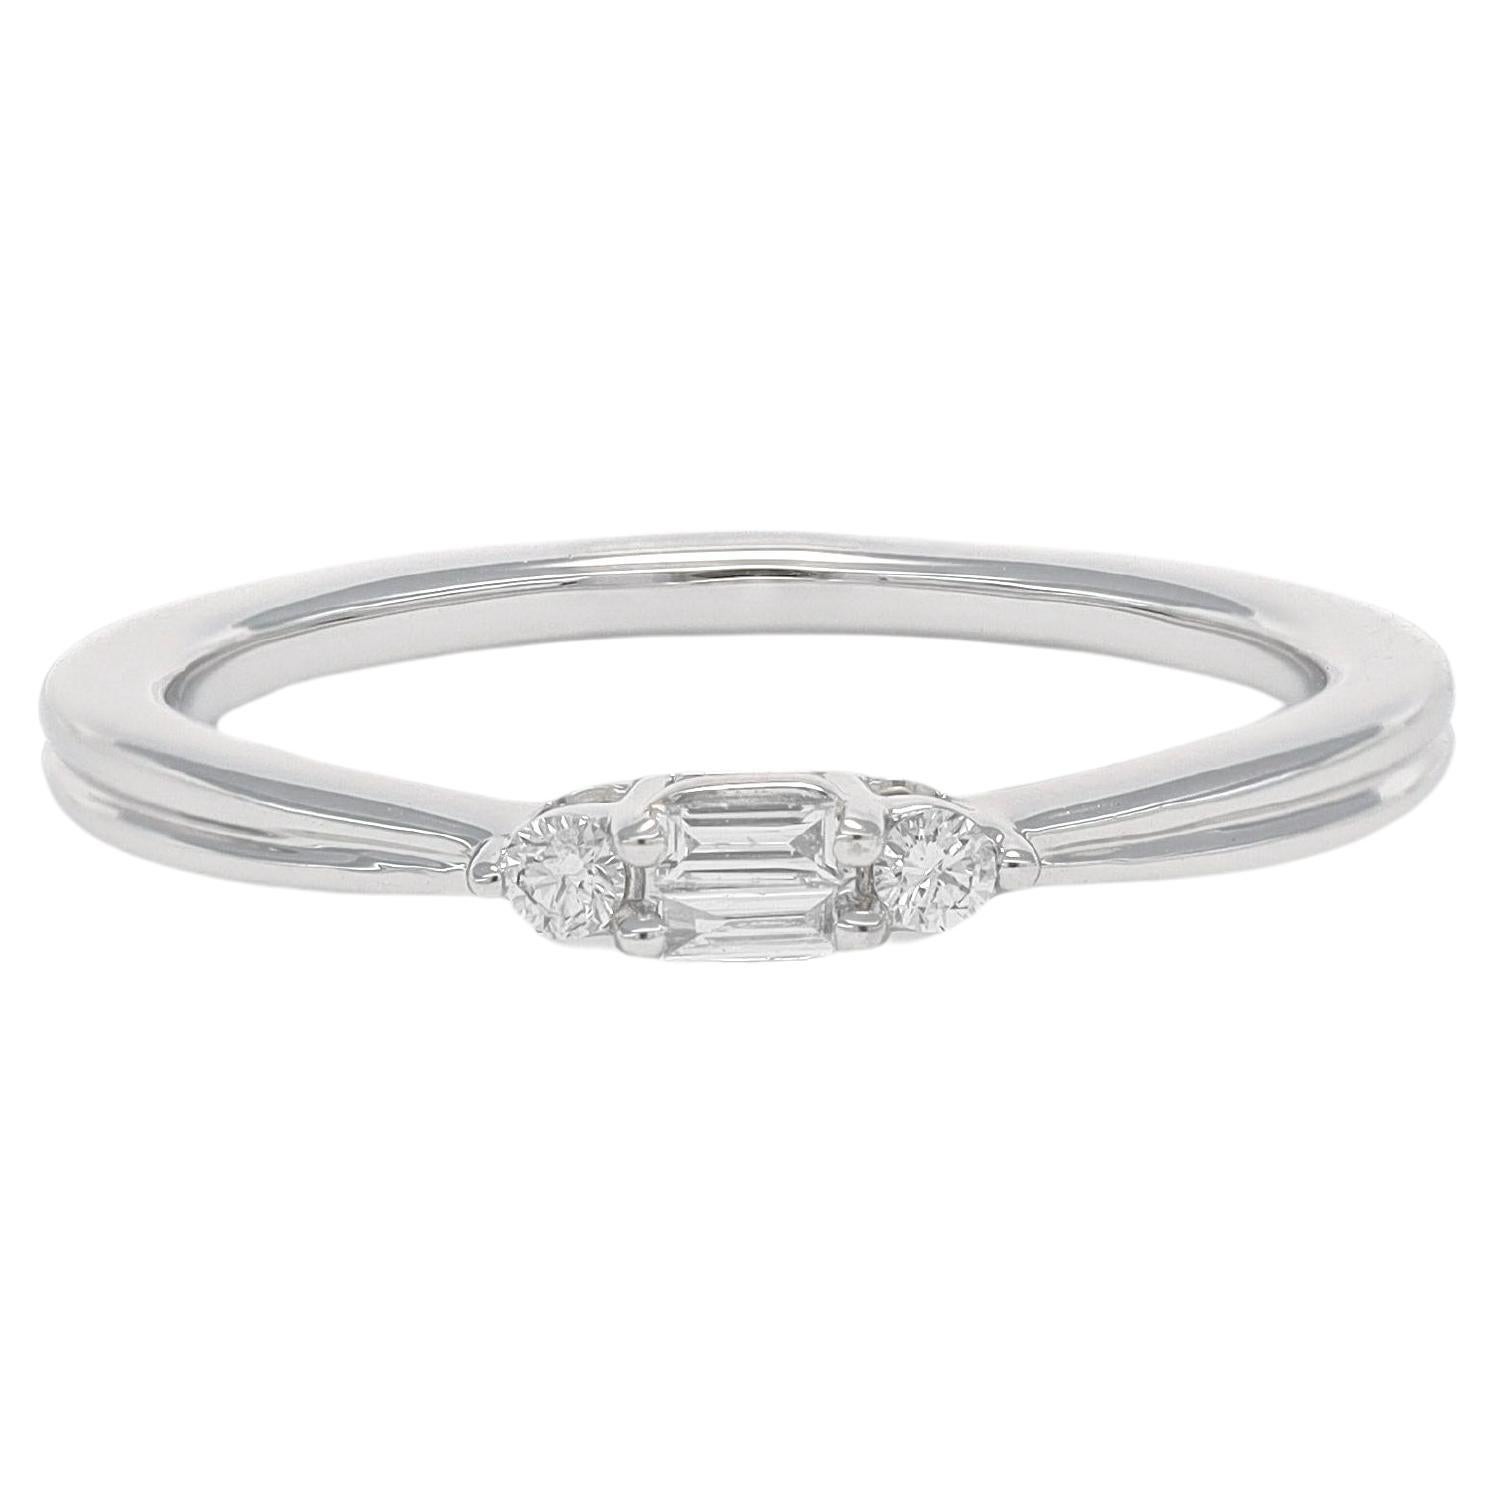 Natural Diamond Ring 0.11 Carats 18 Karat White Gold Engagement Ring 